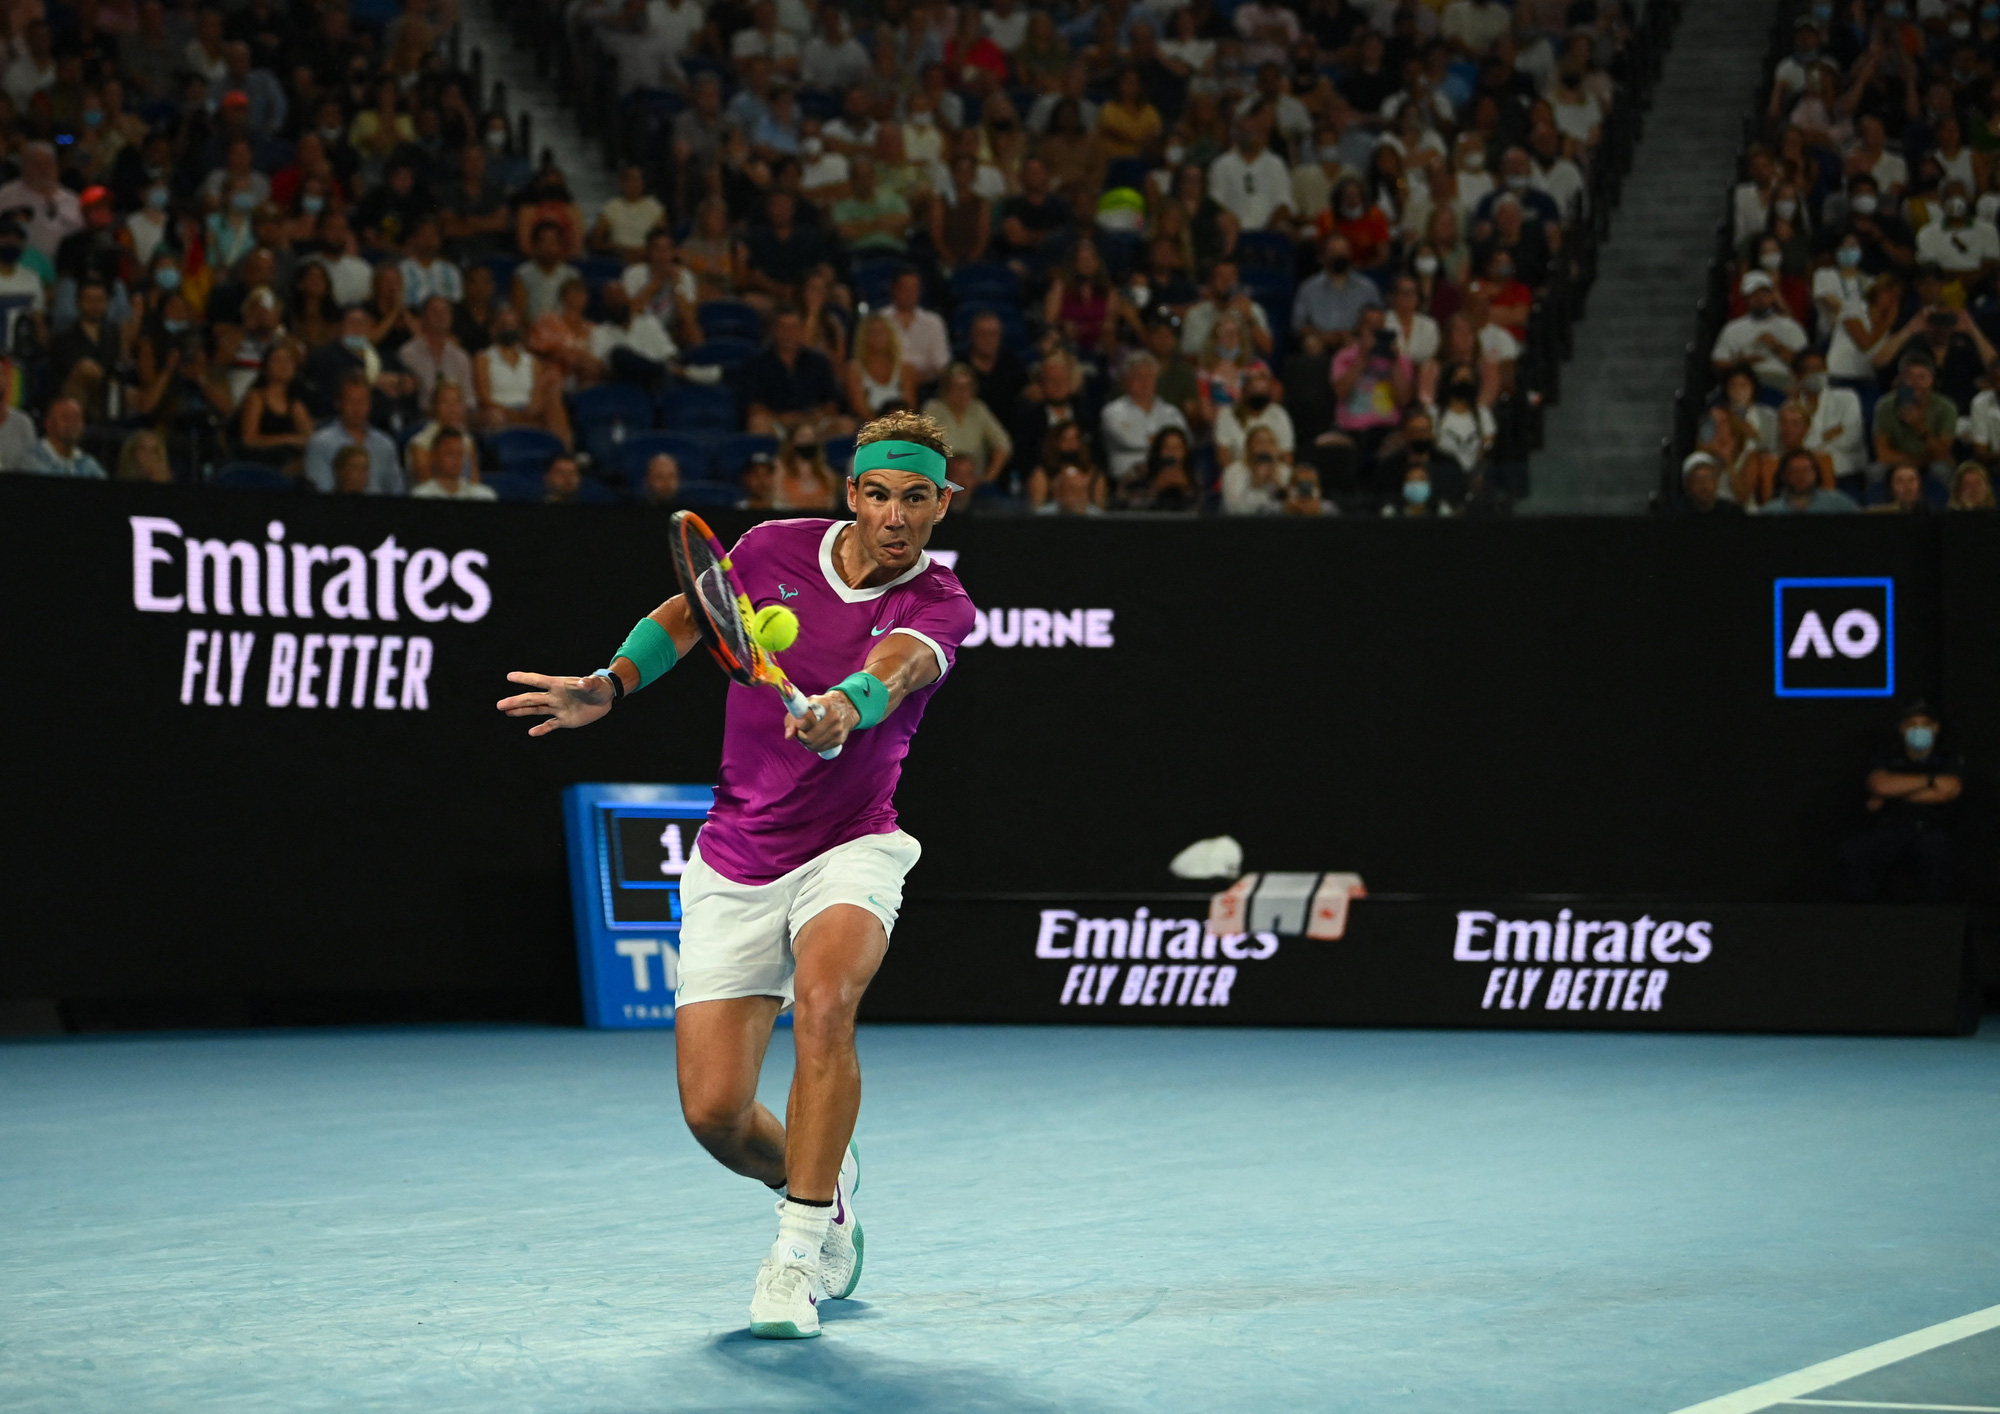 Vô địch Australian Open 2022, Nadal có Grand Slam thứ 21 trong sự nghiệp  - Ảnh 1.